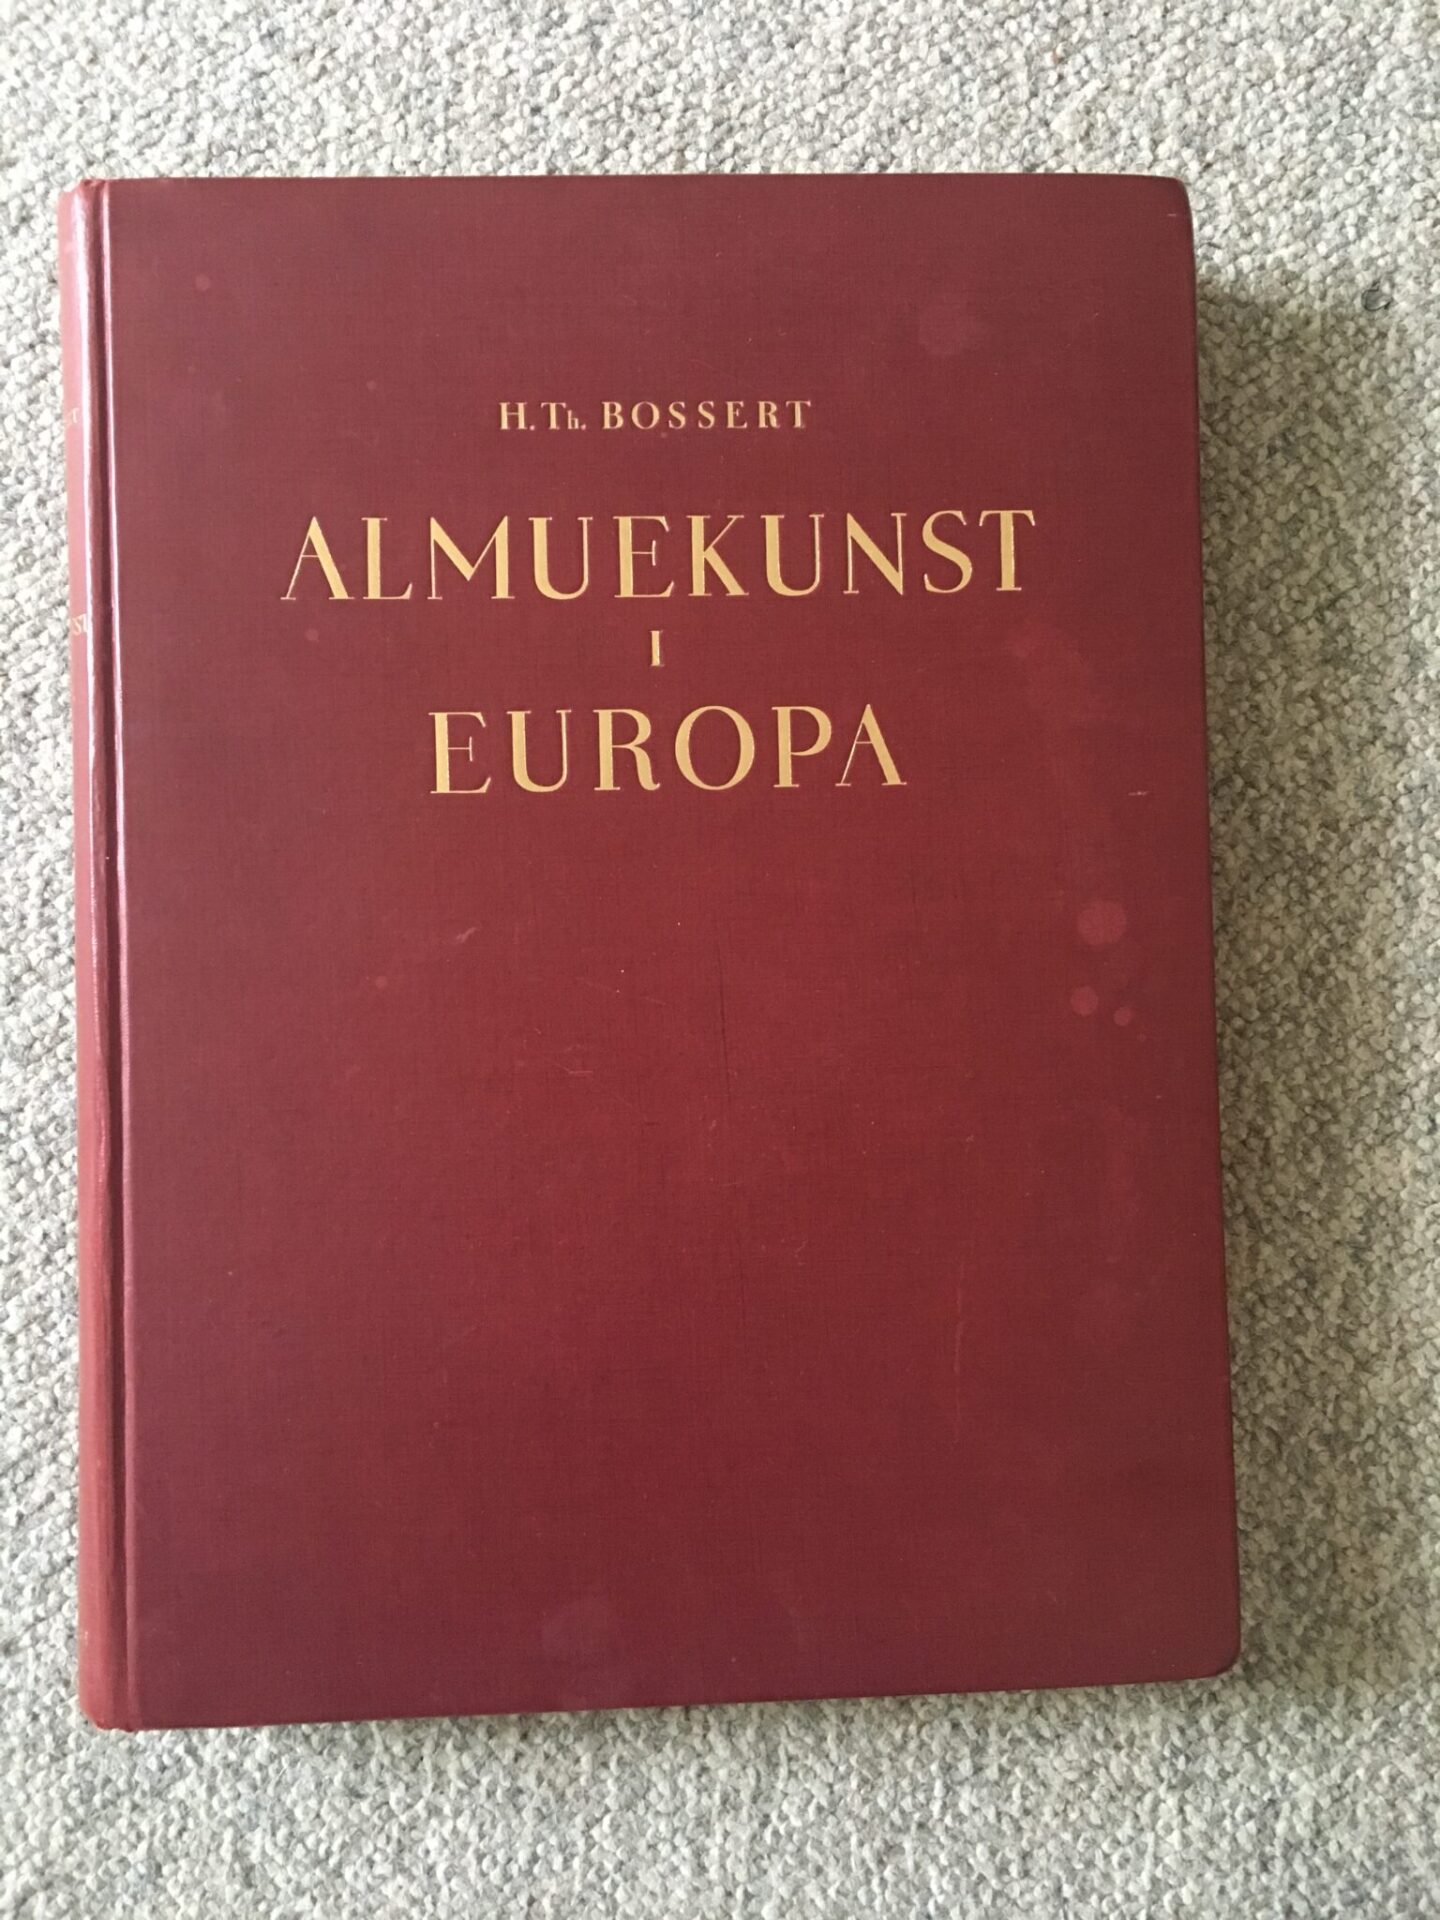 H.Th. Bossert, Almuekunst i Europa, pris 100kr